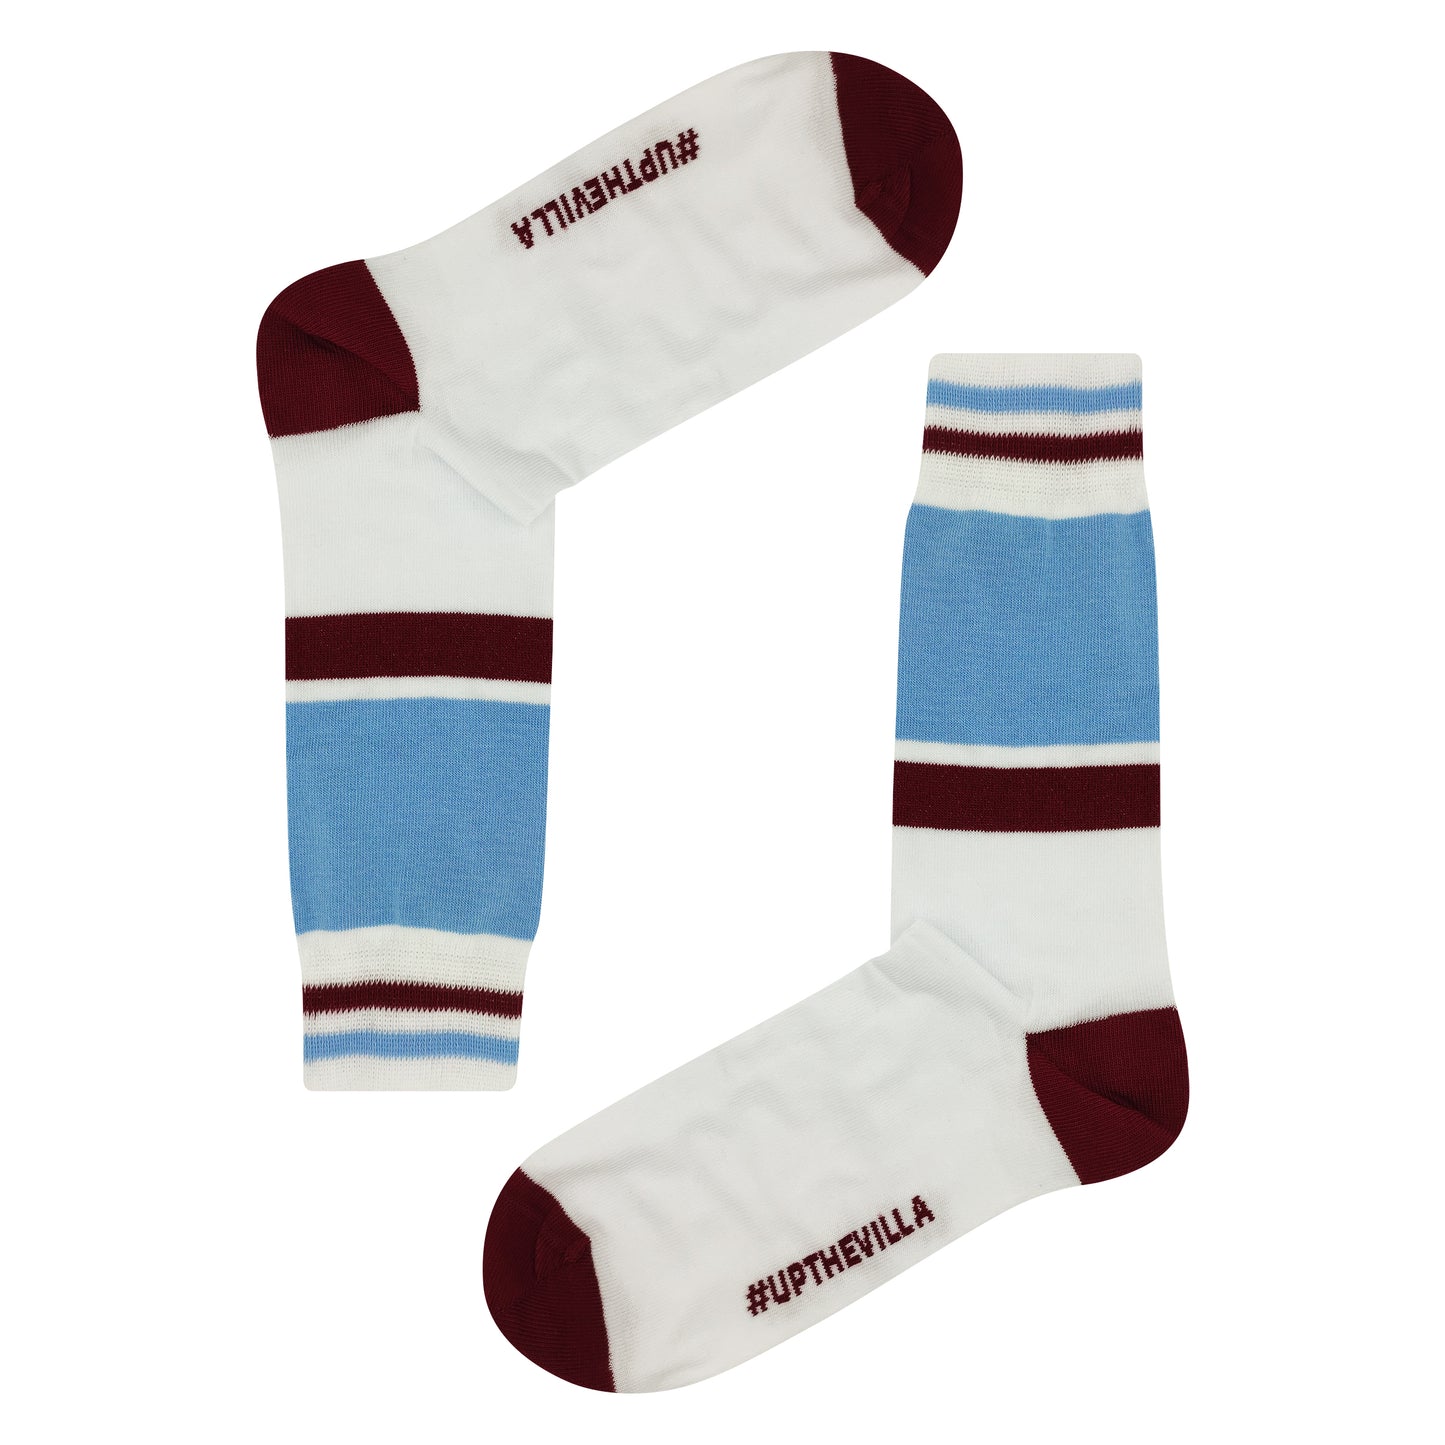 Villa - Retro Shirt Sock Gift Box | Size UK 7 - 11